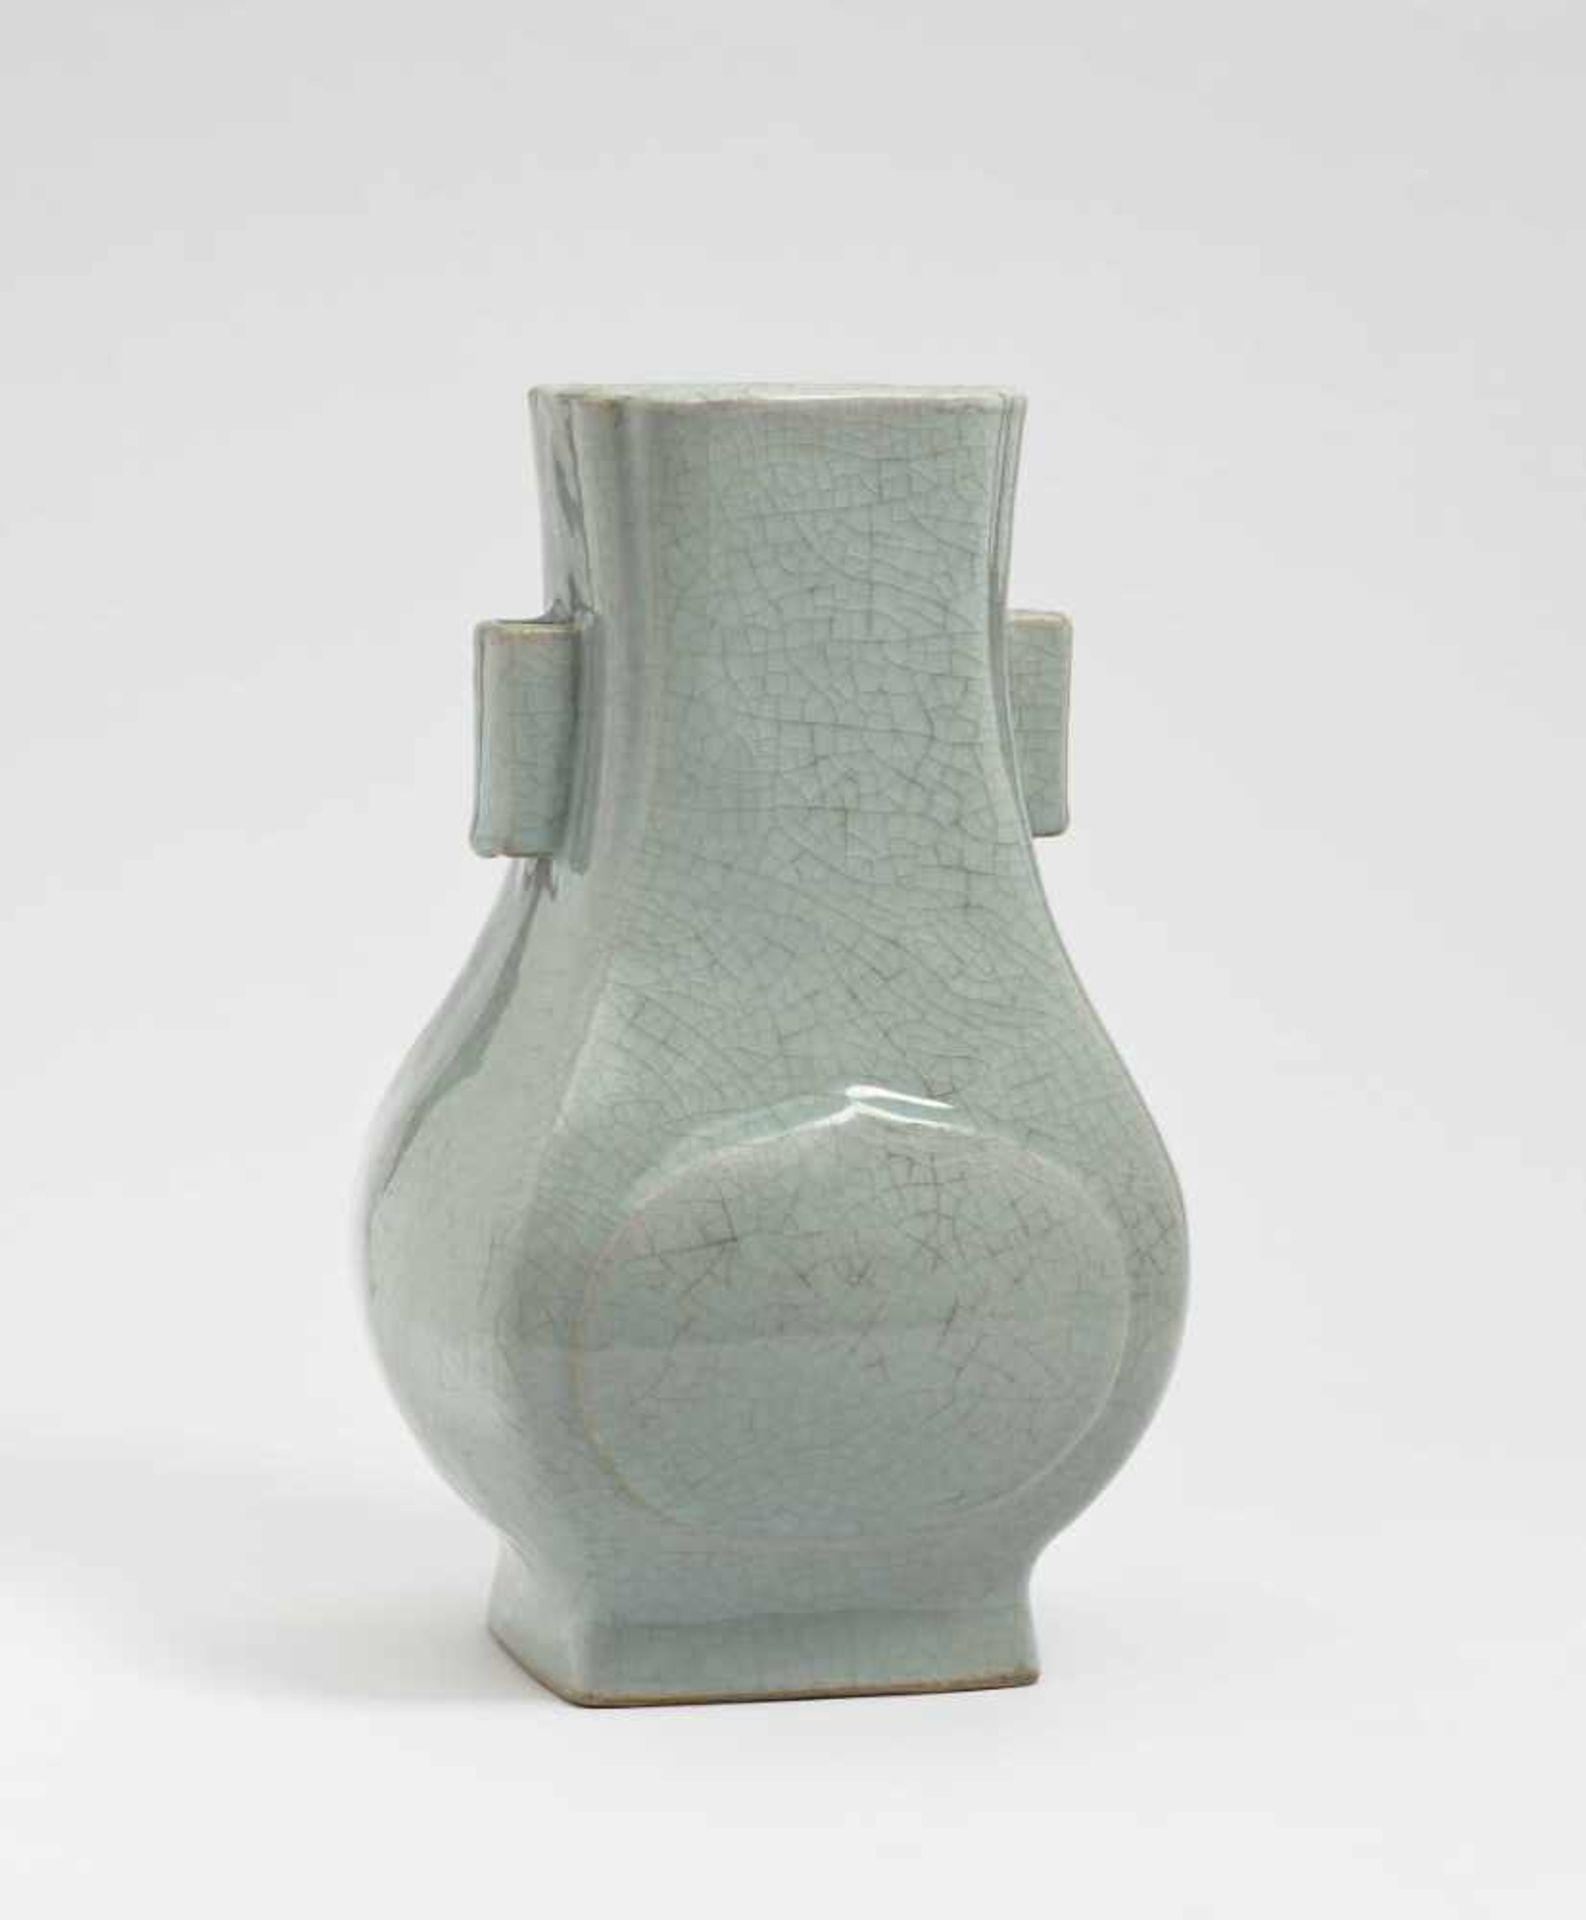 Vase "Hu"-Form China Porzellan. Seladonglasur mit Krakelee. Balusterform mit seitlichen